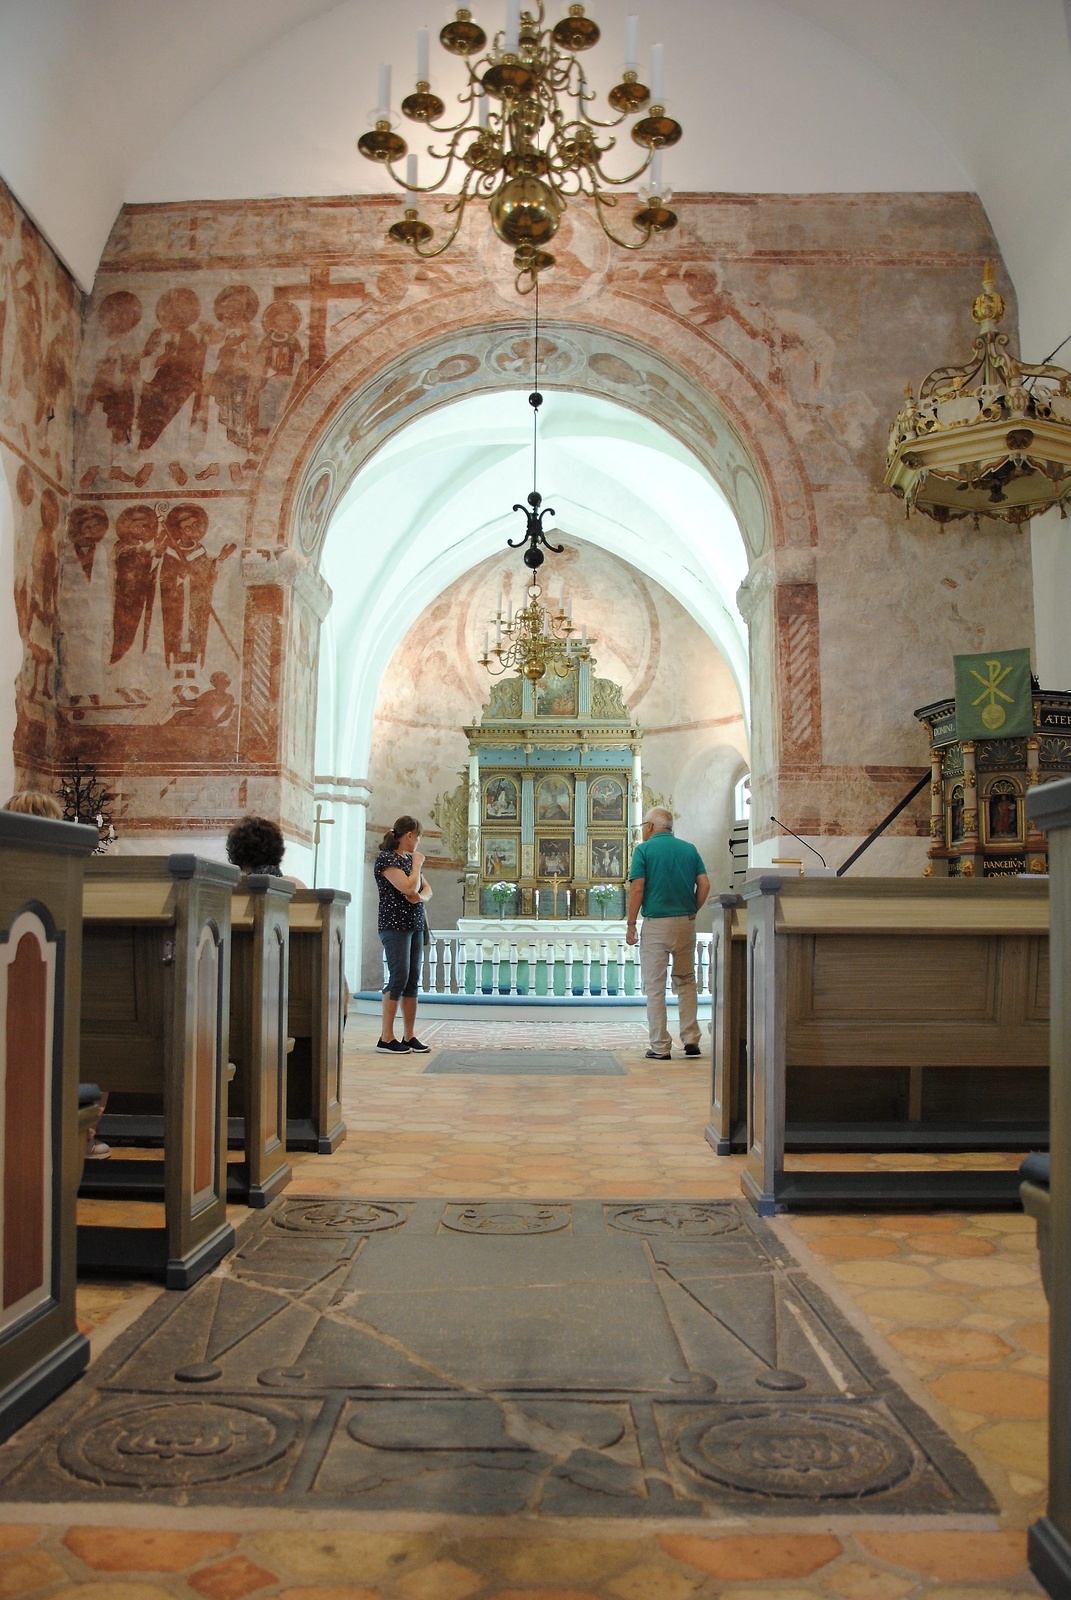 Finja kyrka är en välkänd historisk byggnad med kalkmålningar från 1100- talet. Foto: Sharon Wong